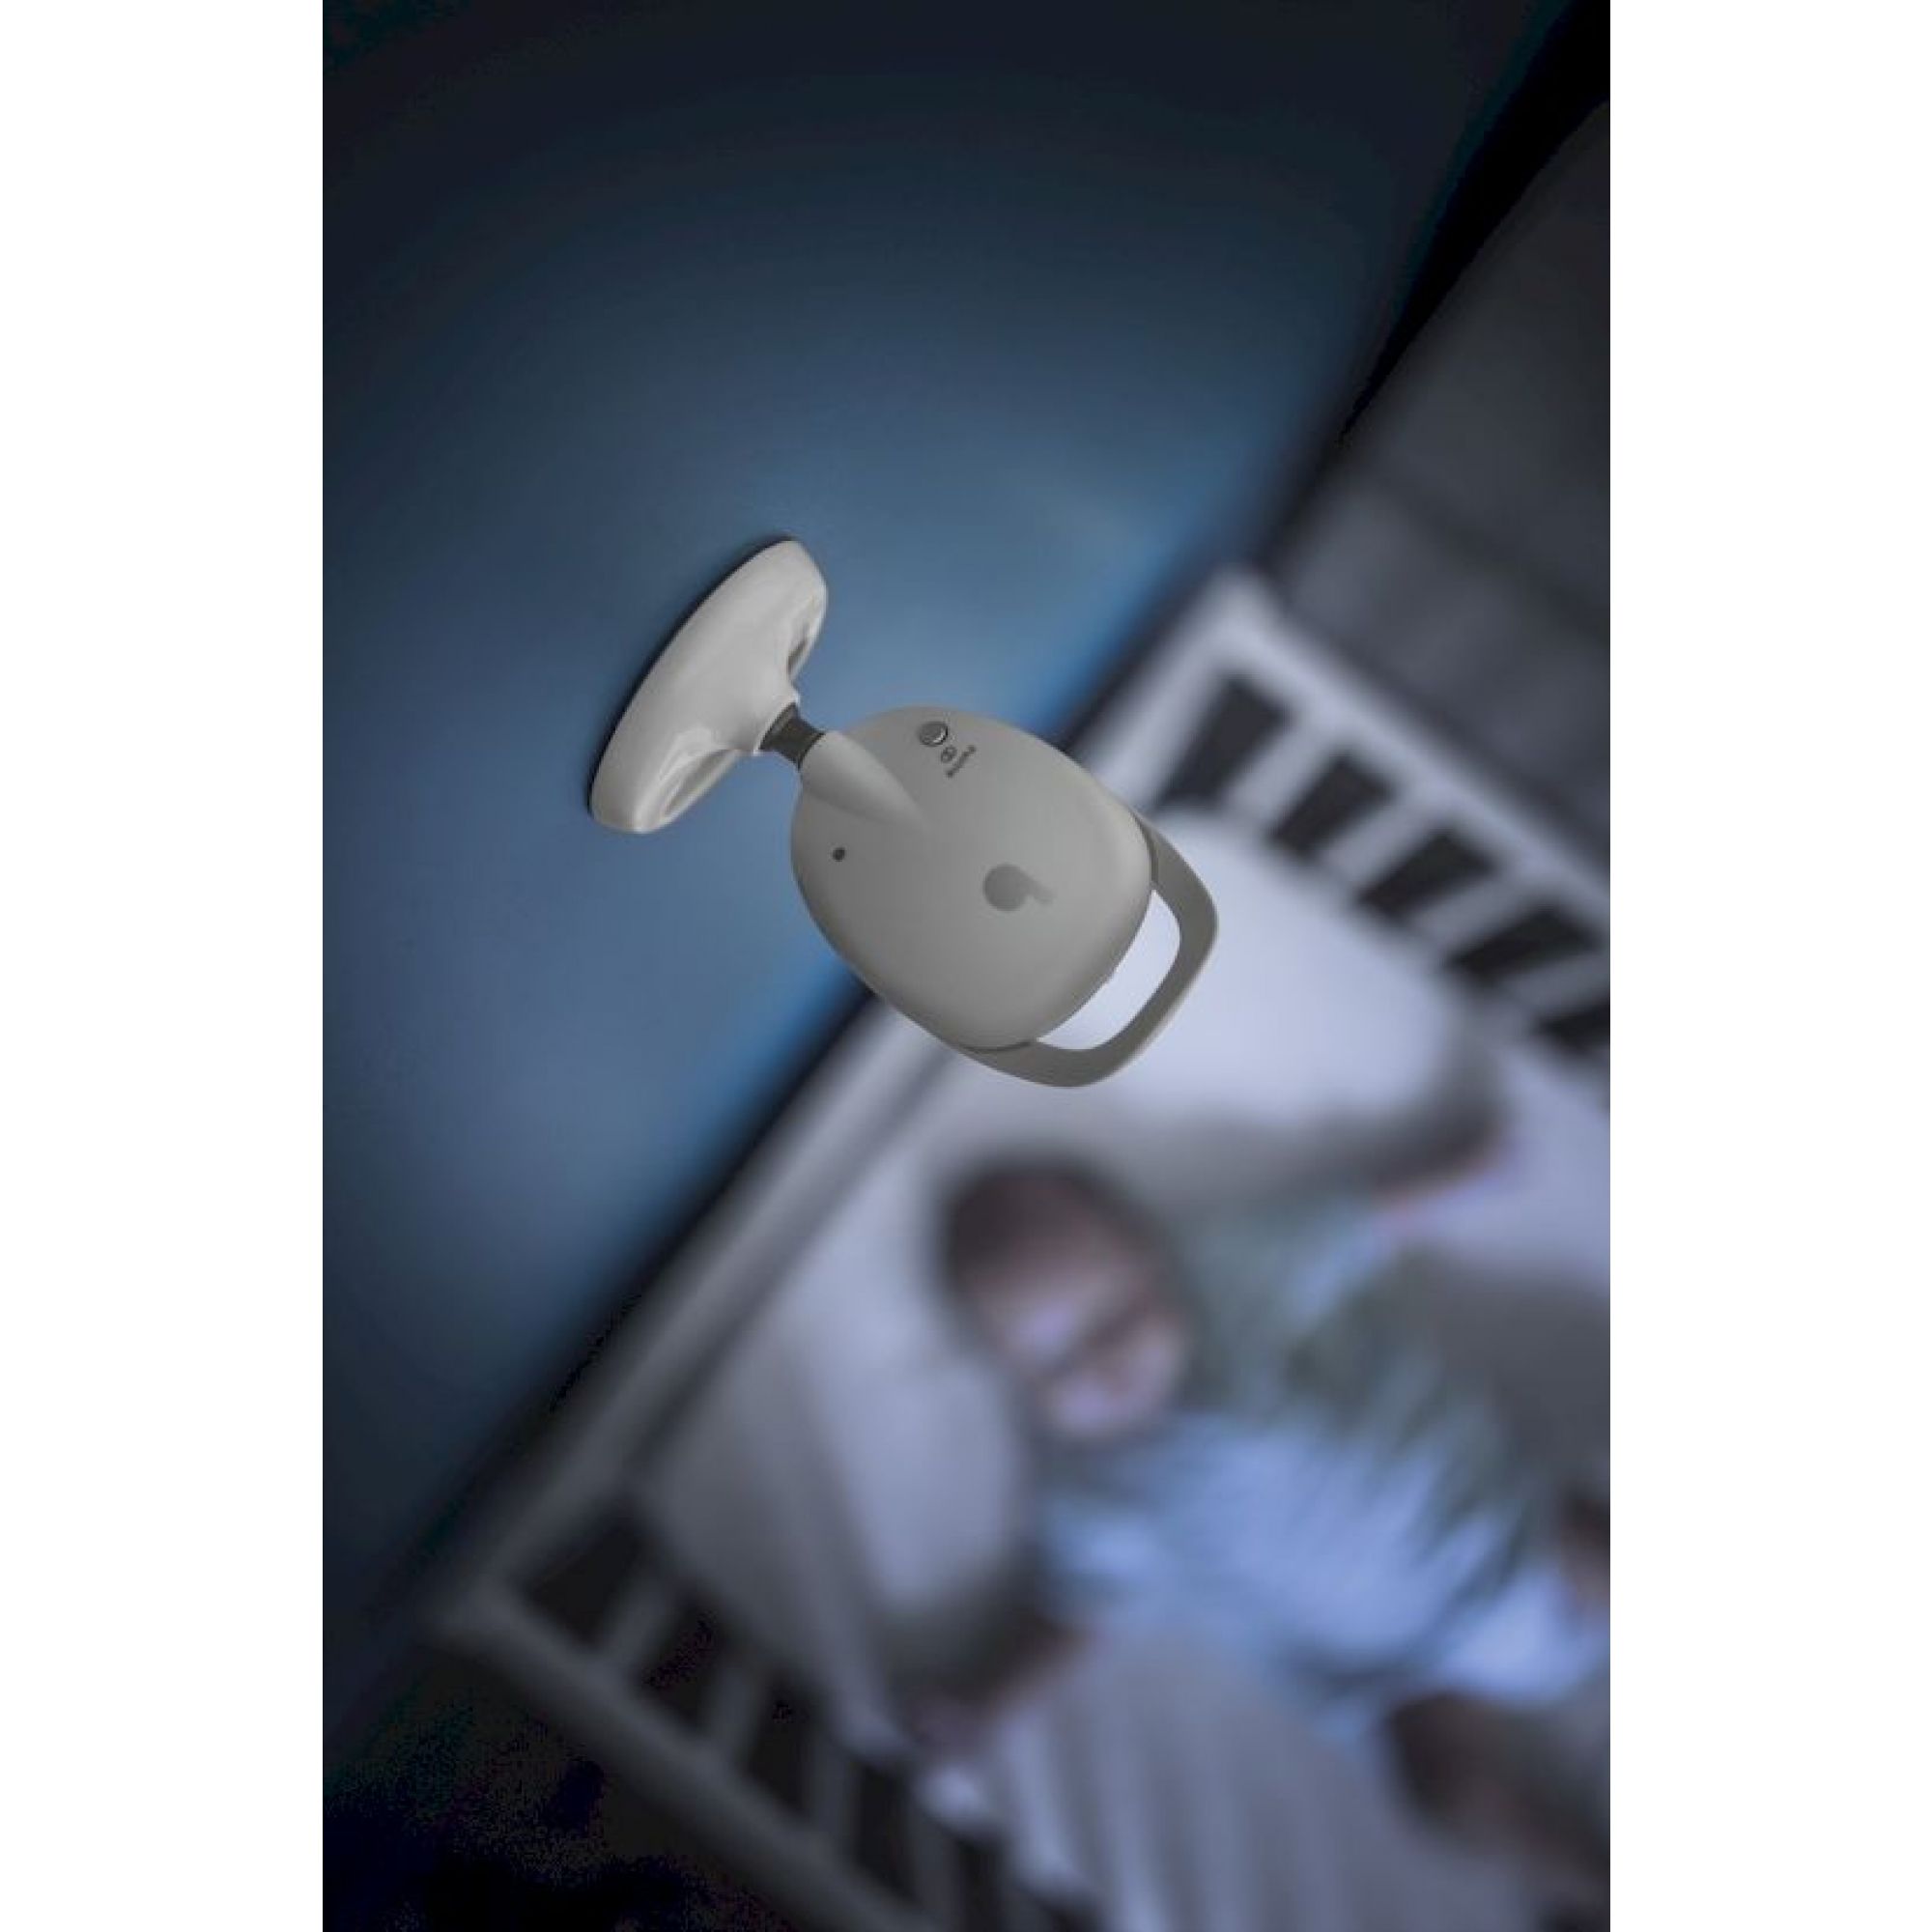 Caméra additionelle pour babyphone yoo see de Babymoov sur allobébé